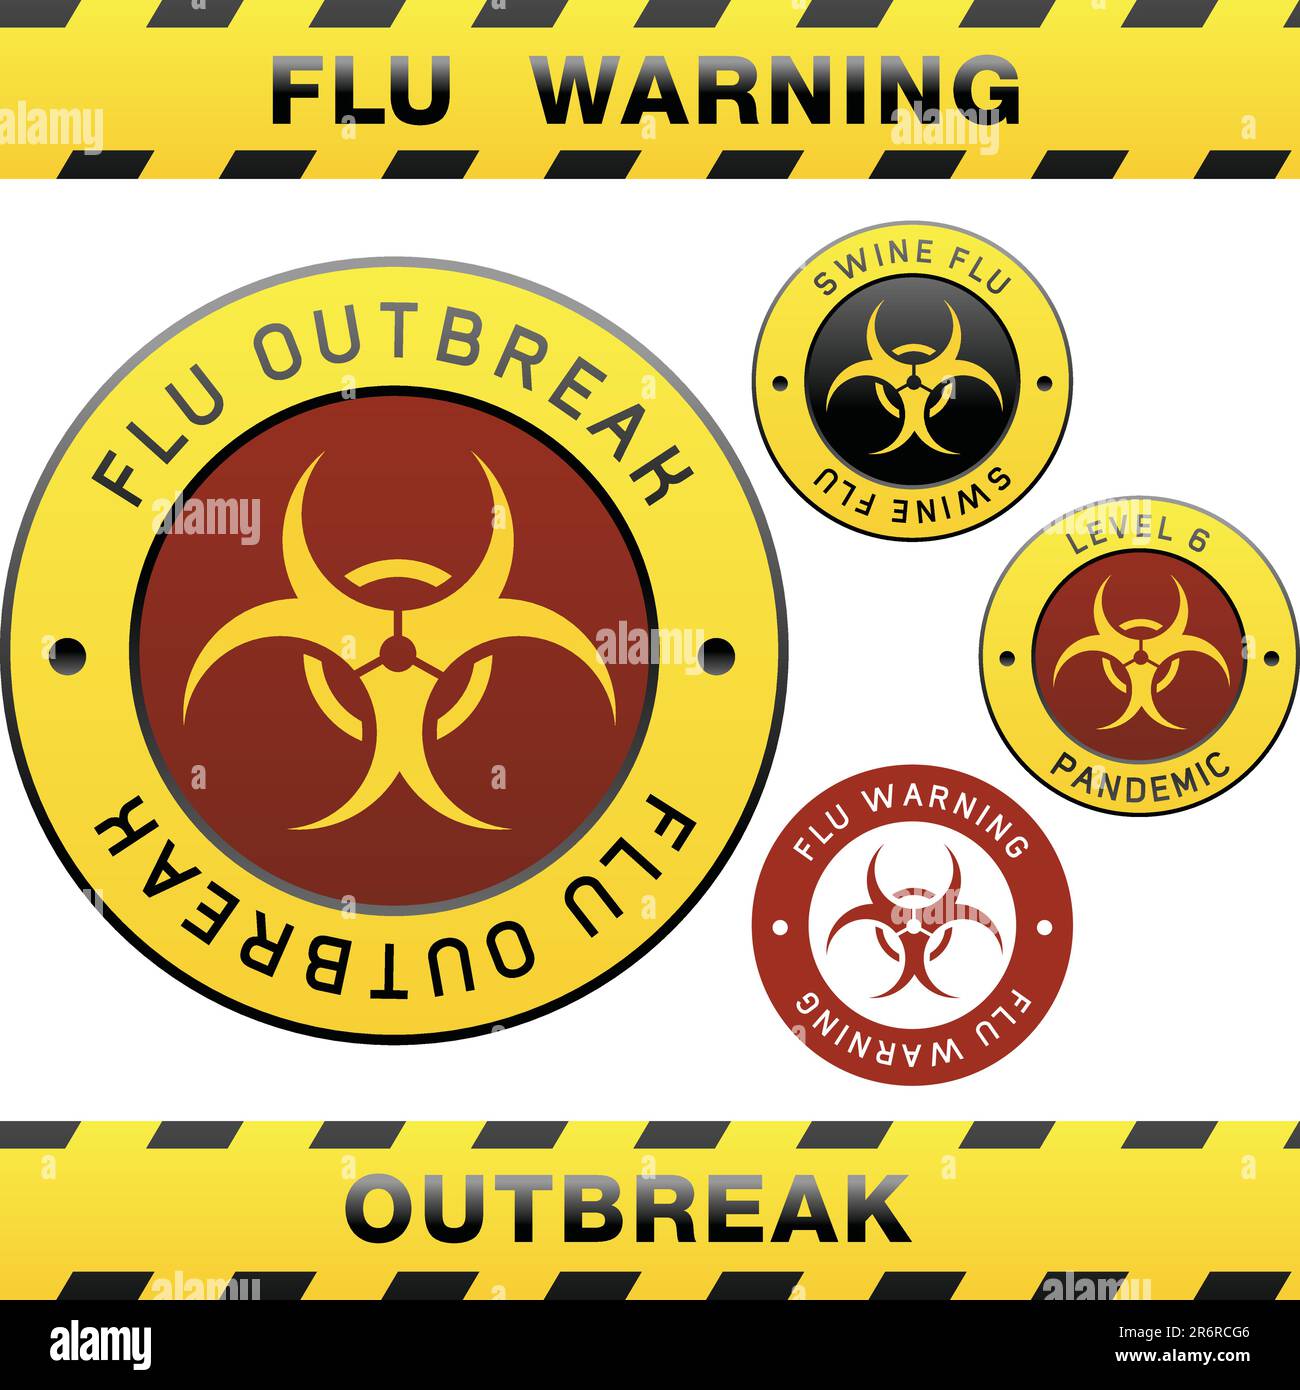 Ruban d'avertissement, badge, étiquettes et autocollants portant le symbole de risque biologique pour les épidémies de grippe porcine Illustration de Vecteur